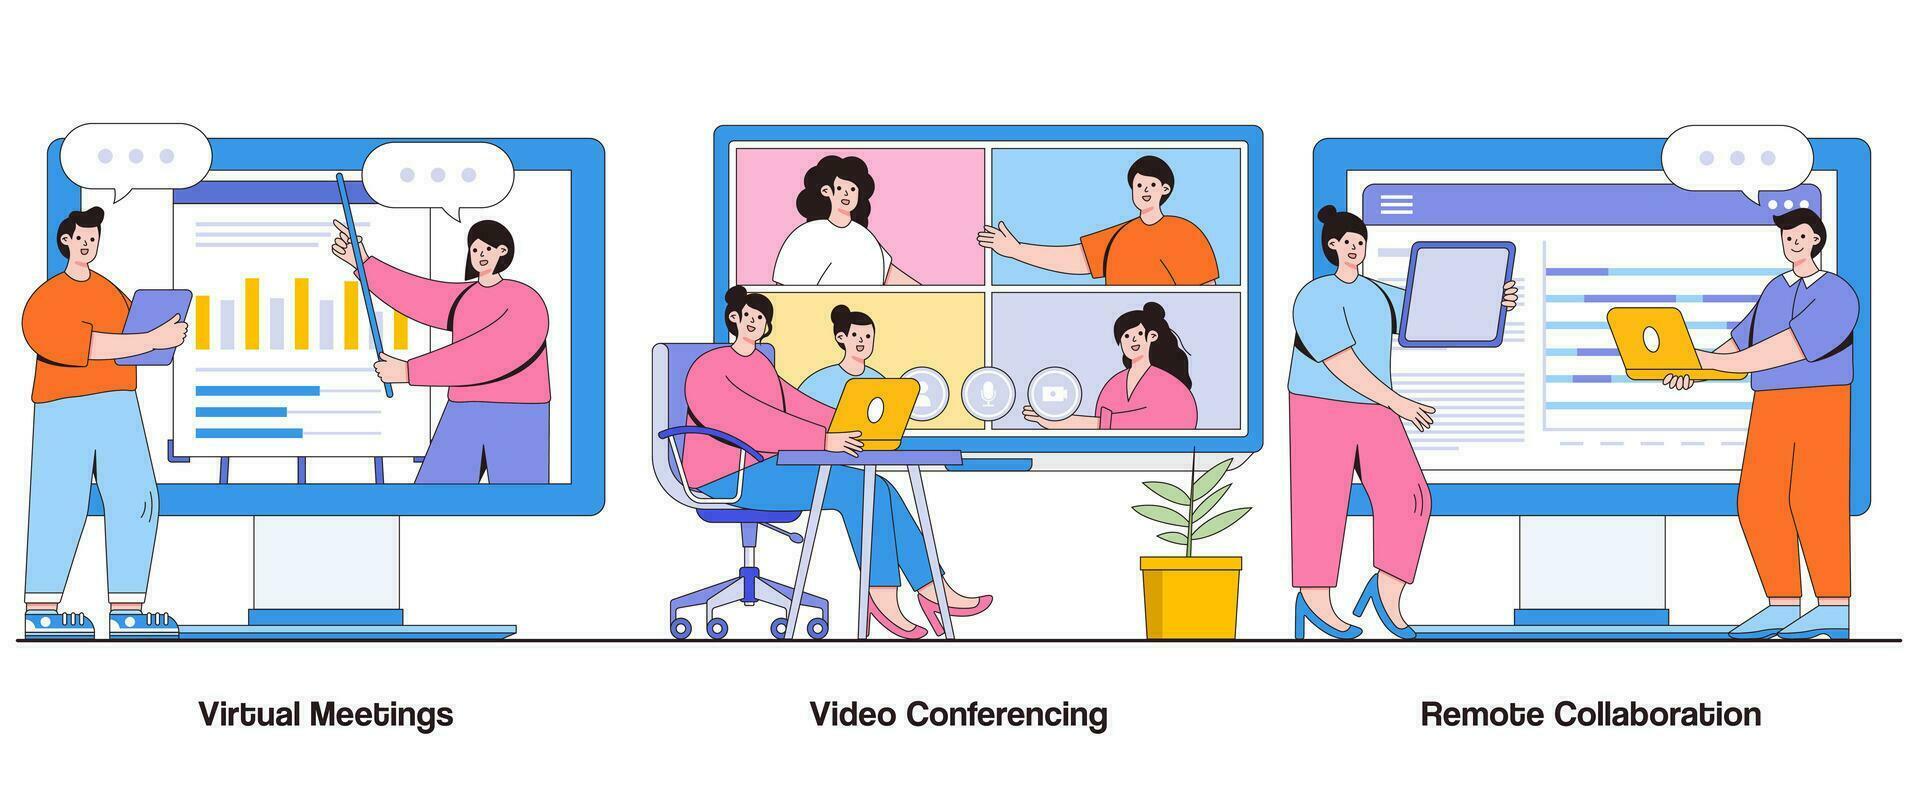 virtuale incontri, video conferenza, a distanza collaborazione concetto con carattere. digitale comunicazione astratto vettore illustrazione impostare. connettività, efficienza, virtuale lavoro di squadra metafora